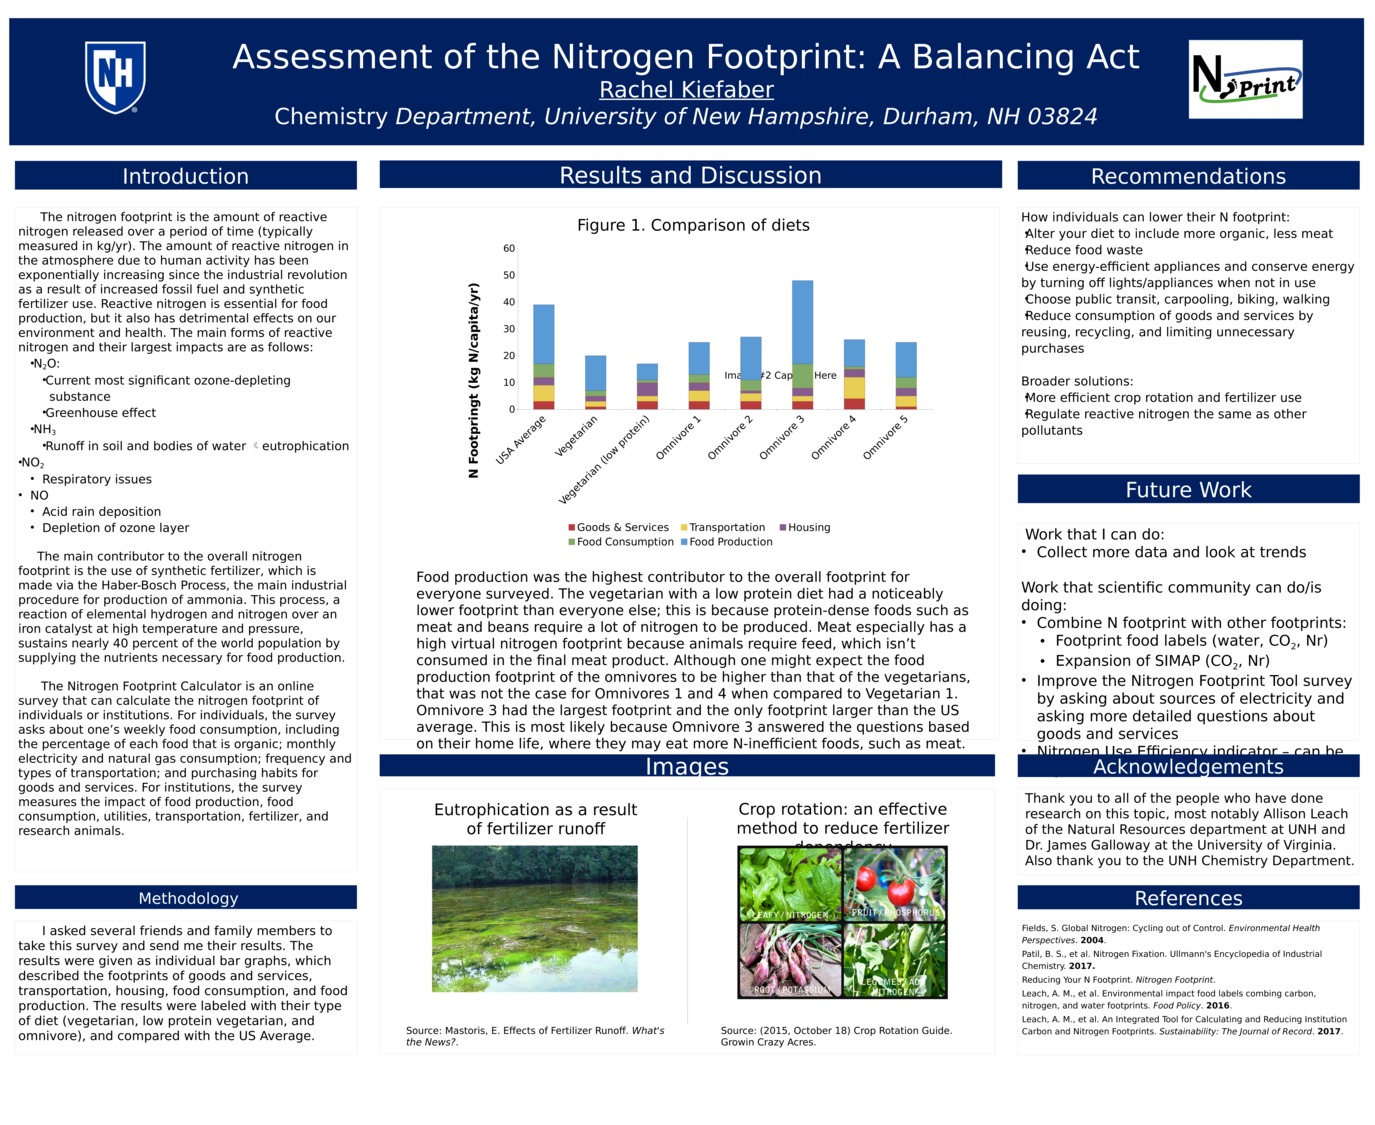 Assessment Of The Nitrogen Footprint: A Balancing Act by rek2000